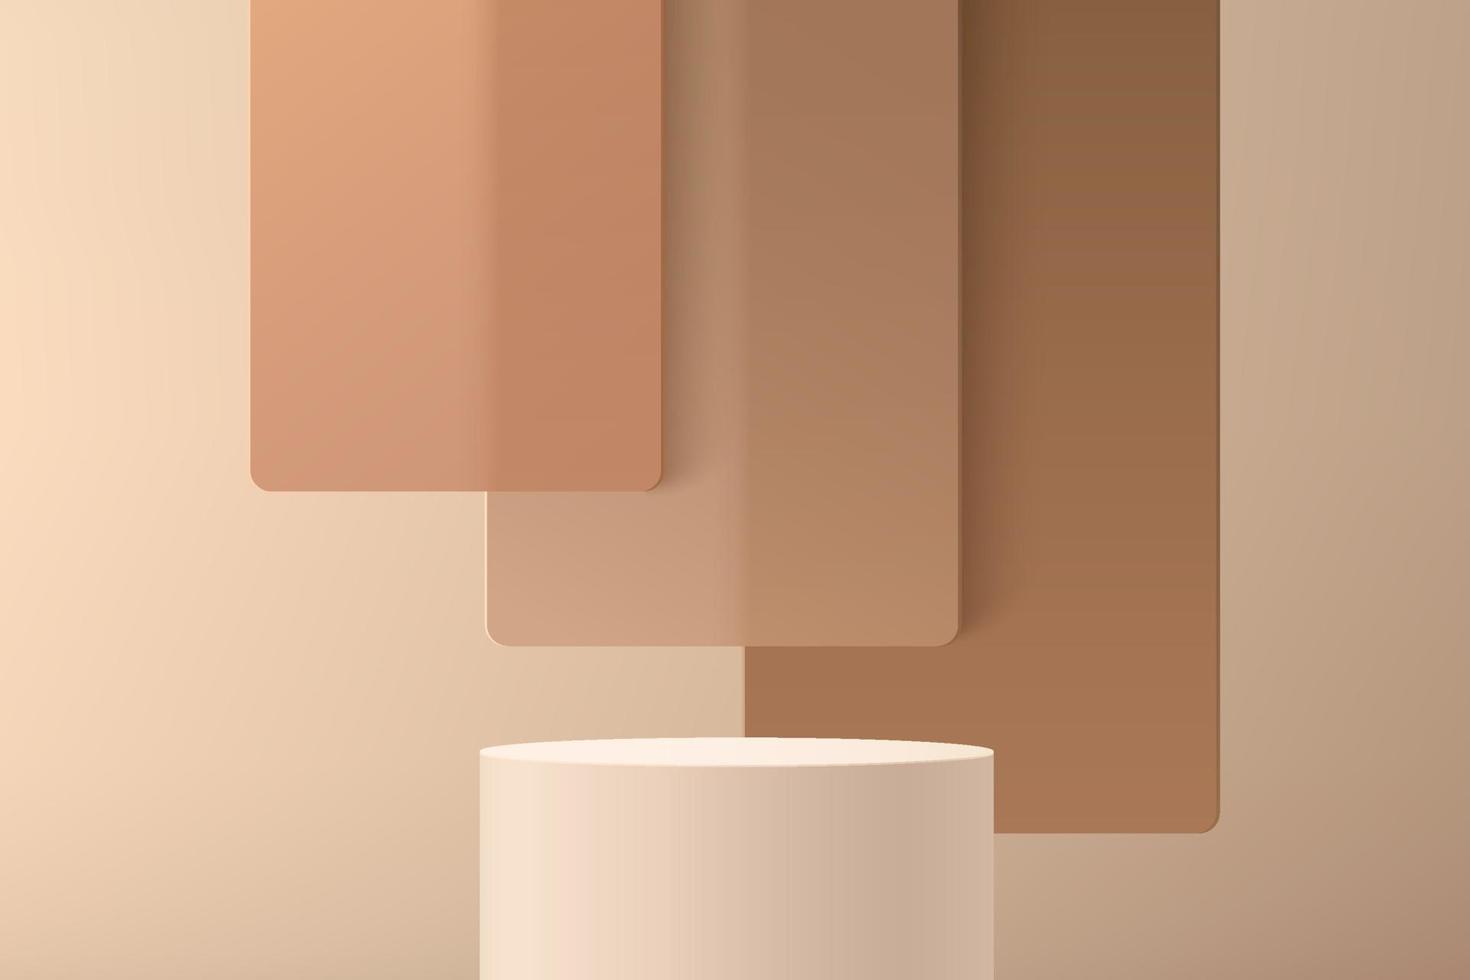 abstrakt 3d beige cylinder piedestal eller stå podium med brun fyrkantig glas överlappande lager bakgrund. brun minimal väggscen för produktvisningspresentation. vektor geometrisk rendering plattform.